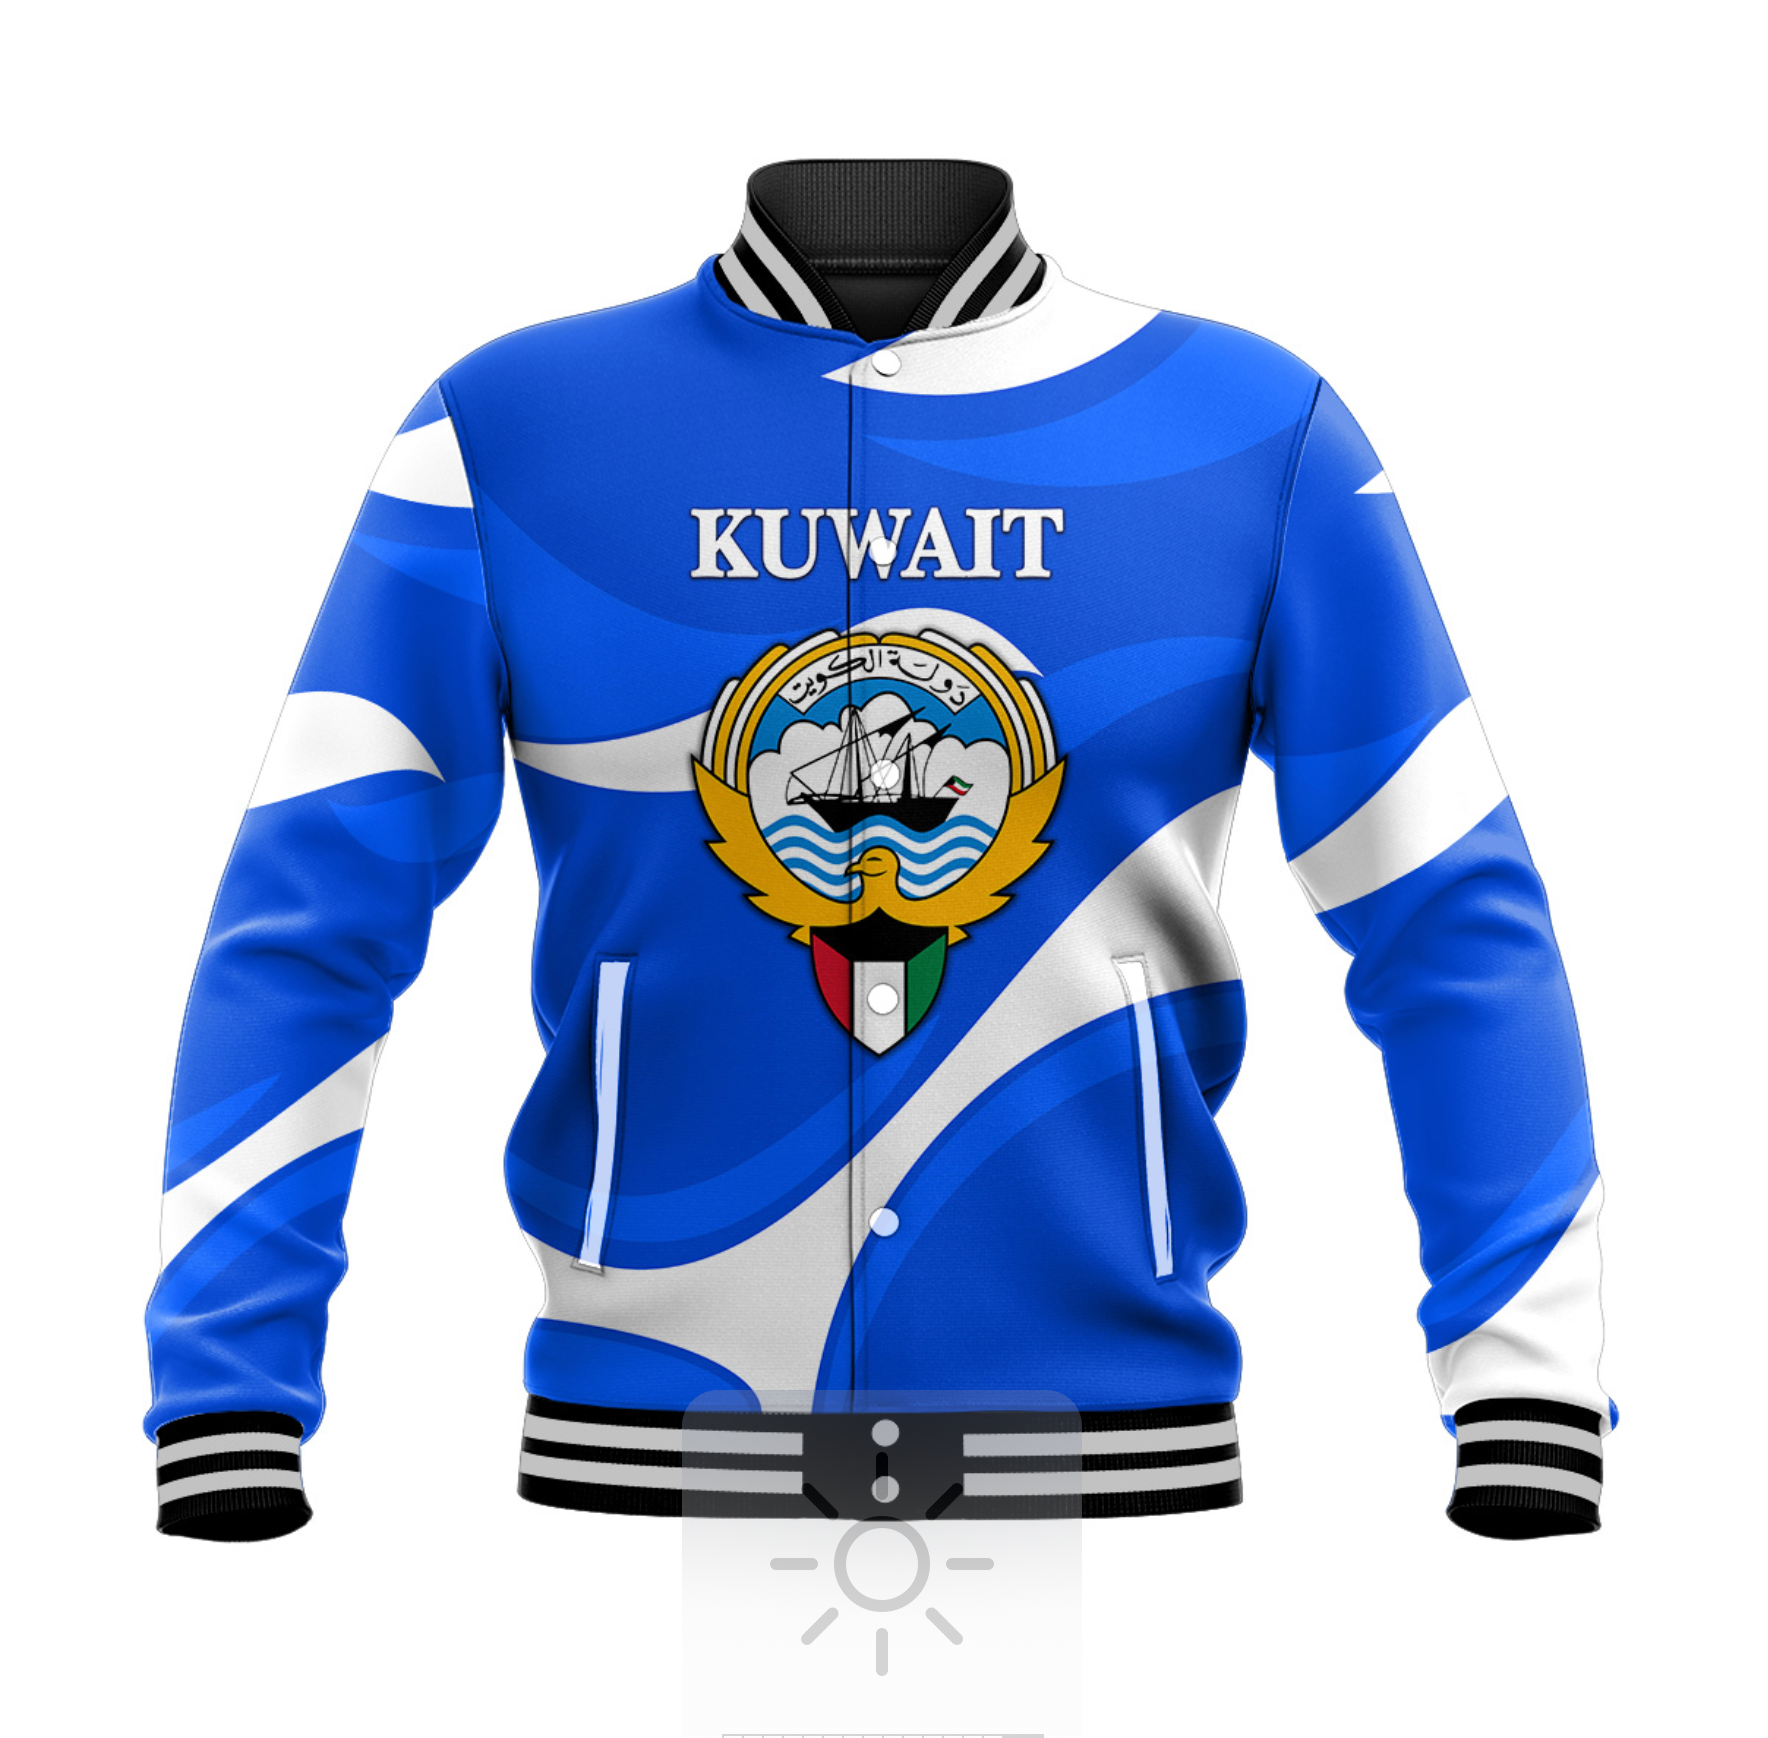 kuwait-baseball-jacket-sporty-style-blue